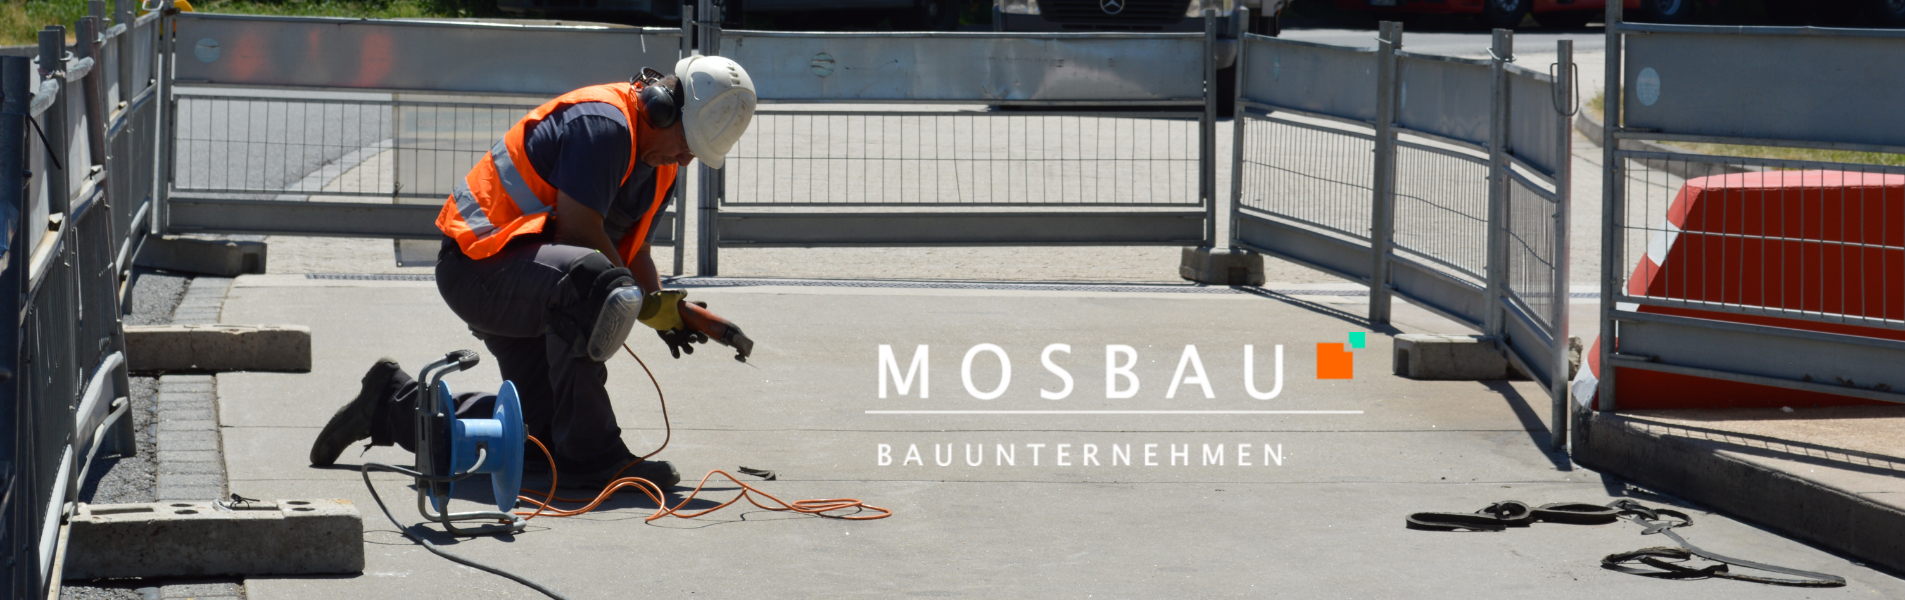 MOSBAU GmbH Bauunternehmen